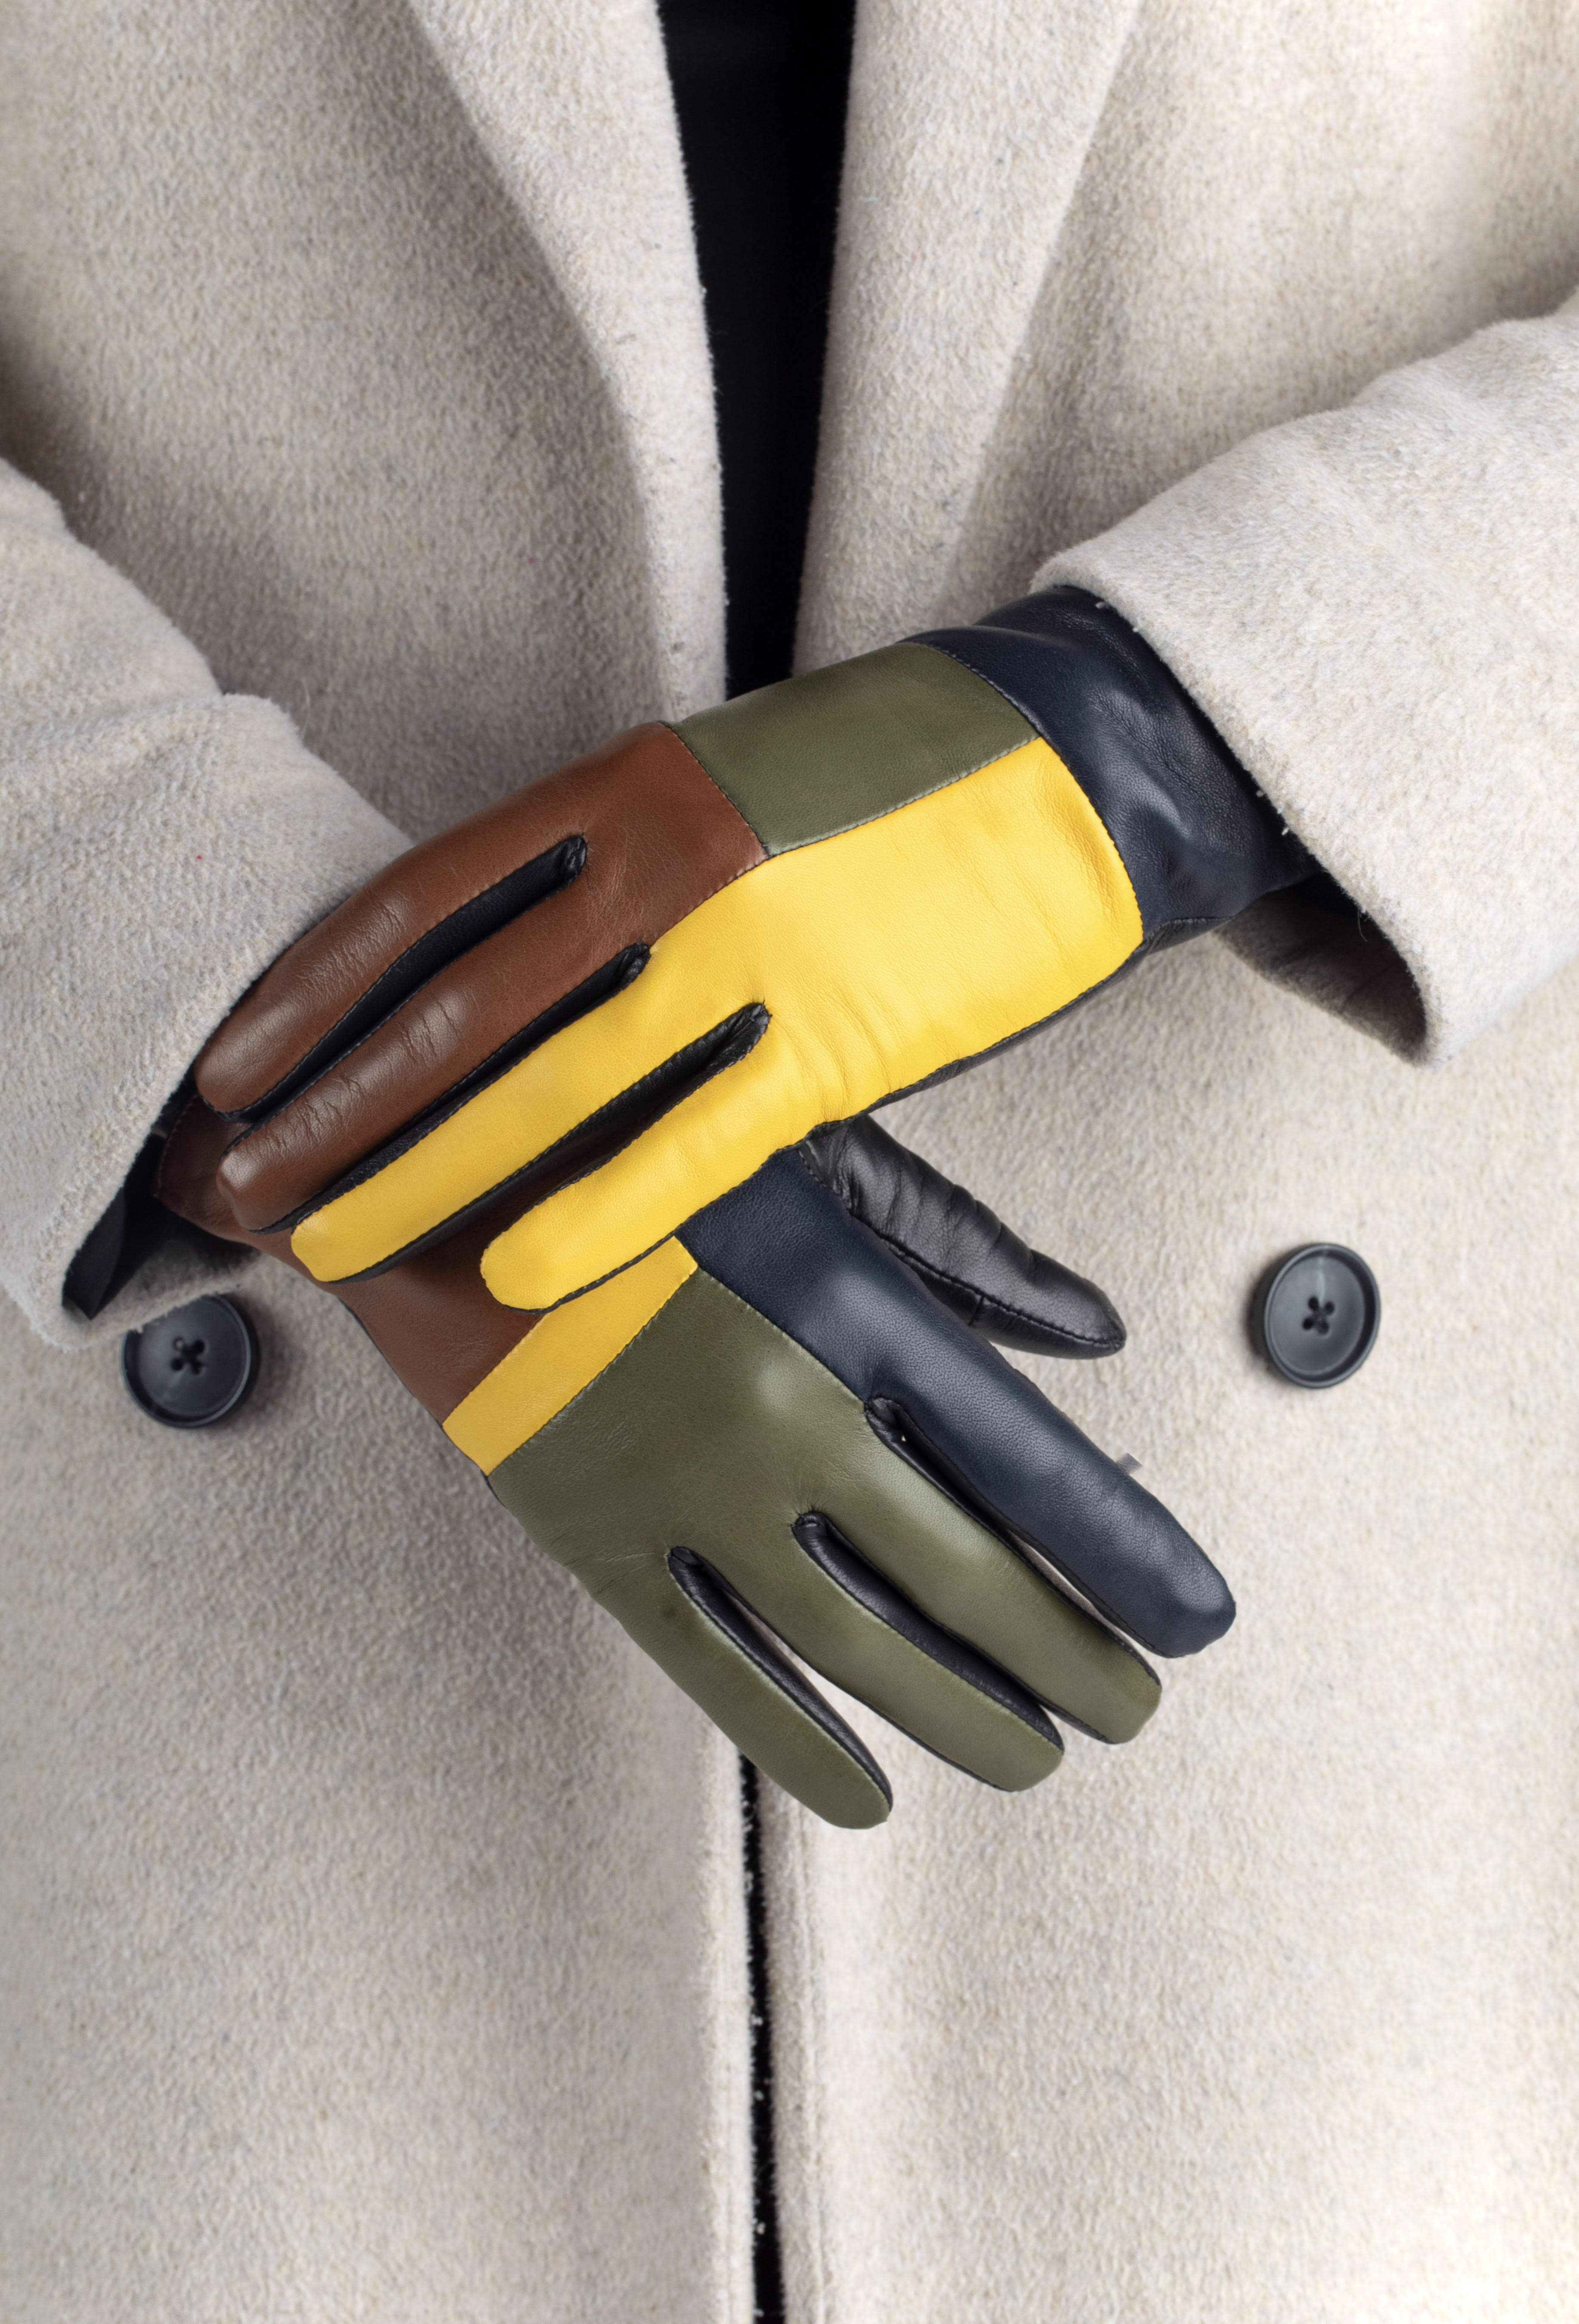 Gants de Conduite Homme Cuir Noir Glove Story - Tous Les Gants